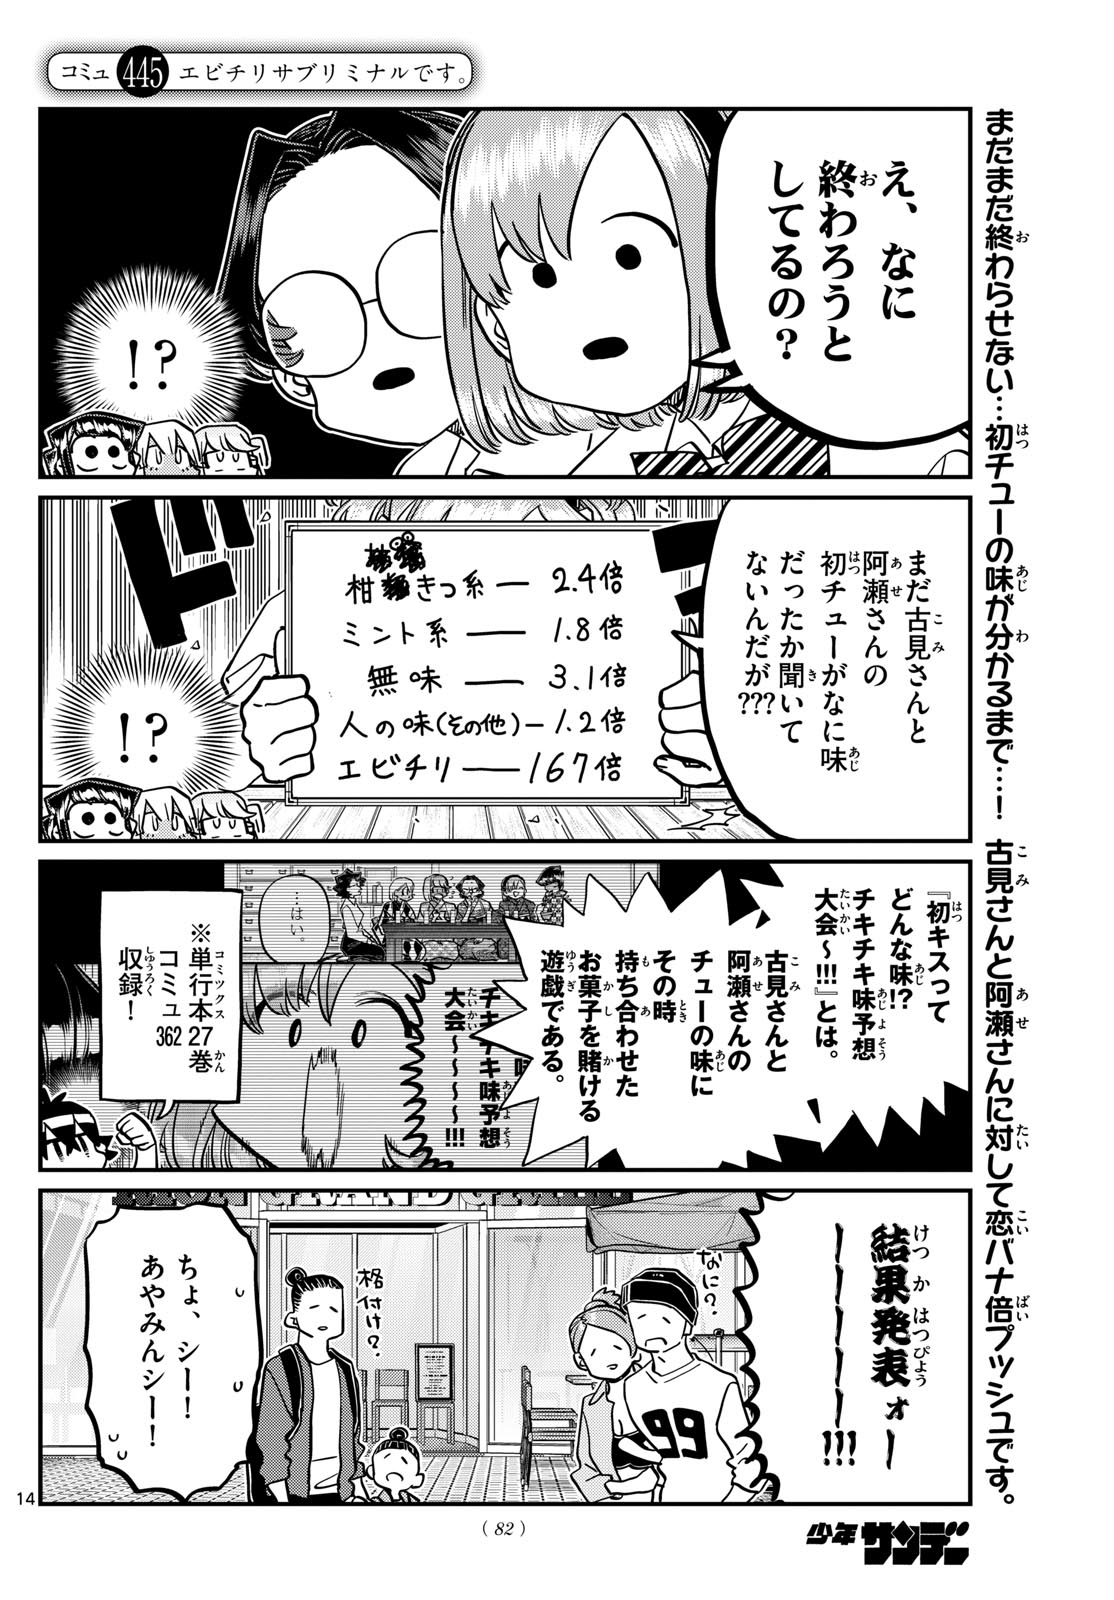 Komi-san wa Komyushou Desu - Chapter 445 - Page 1